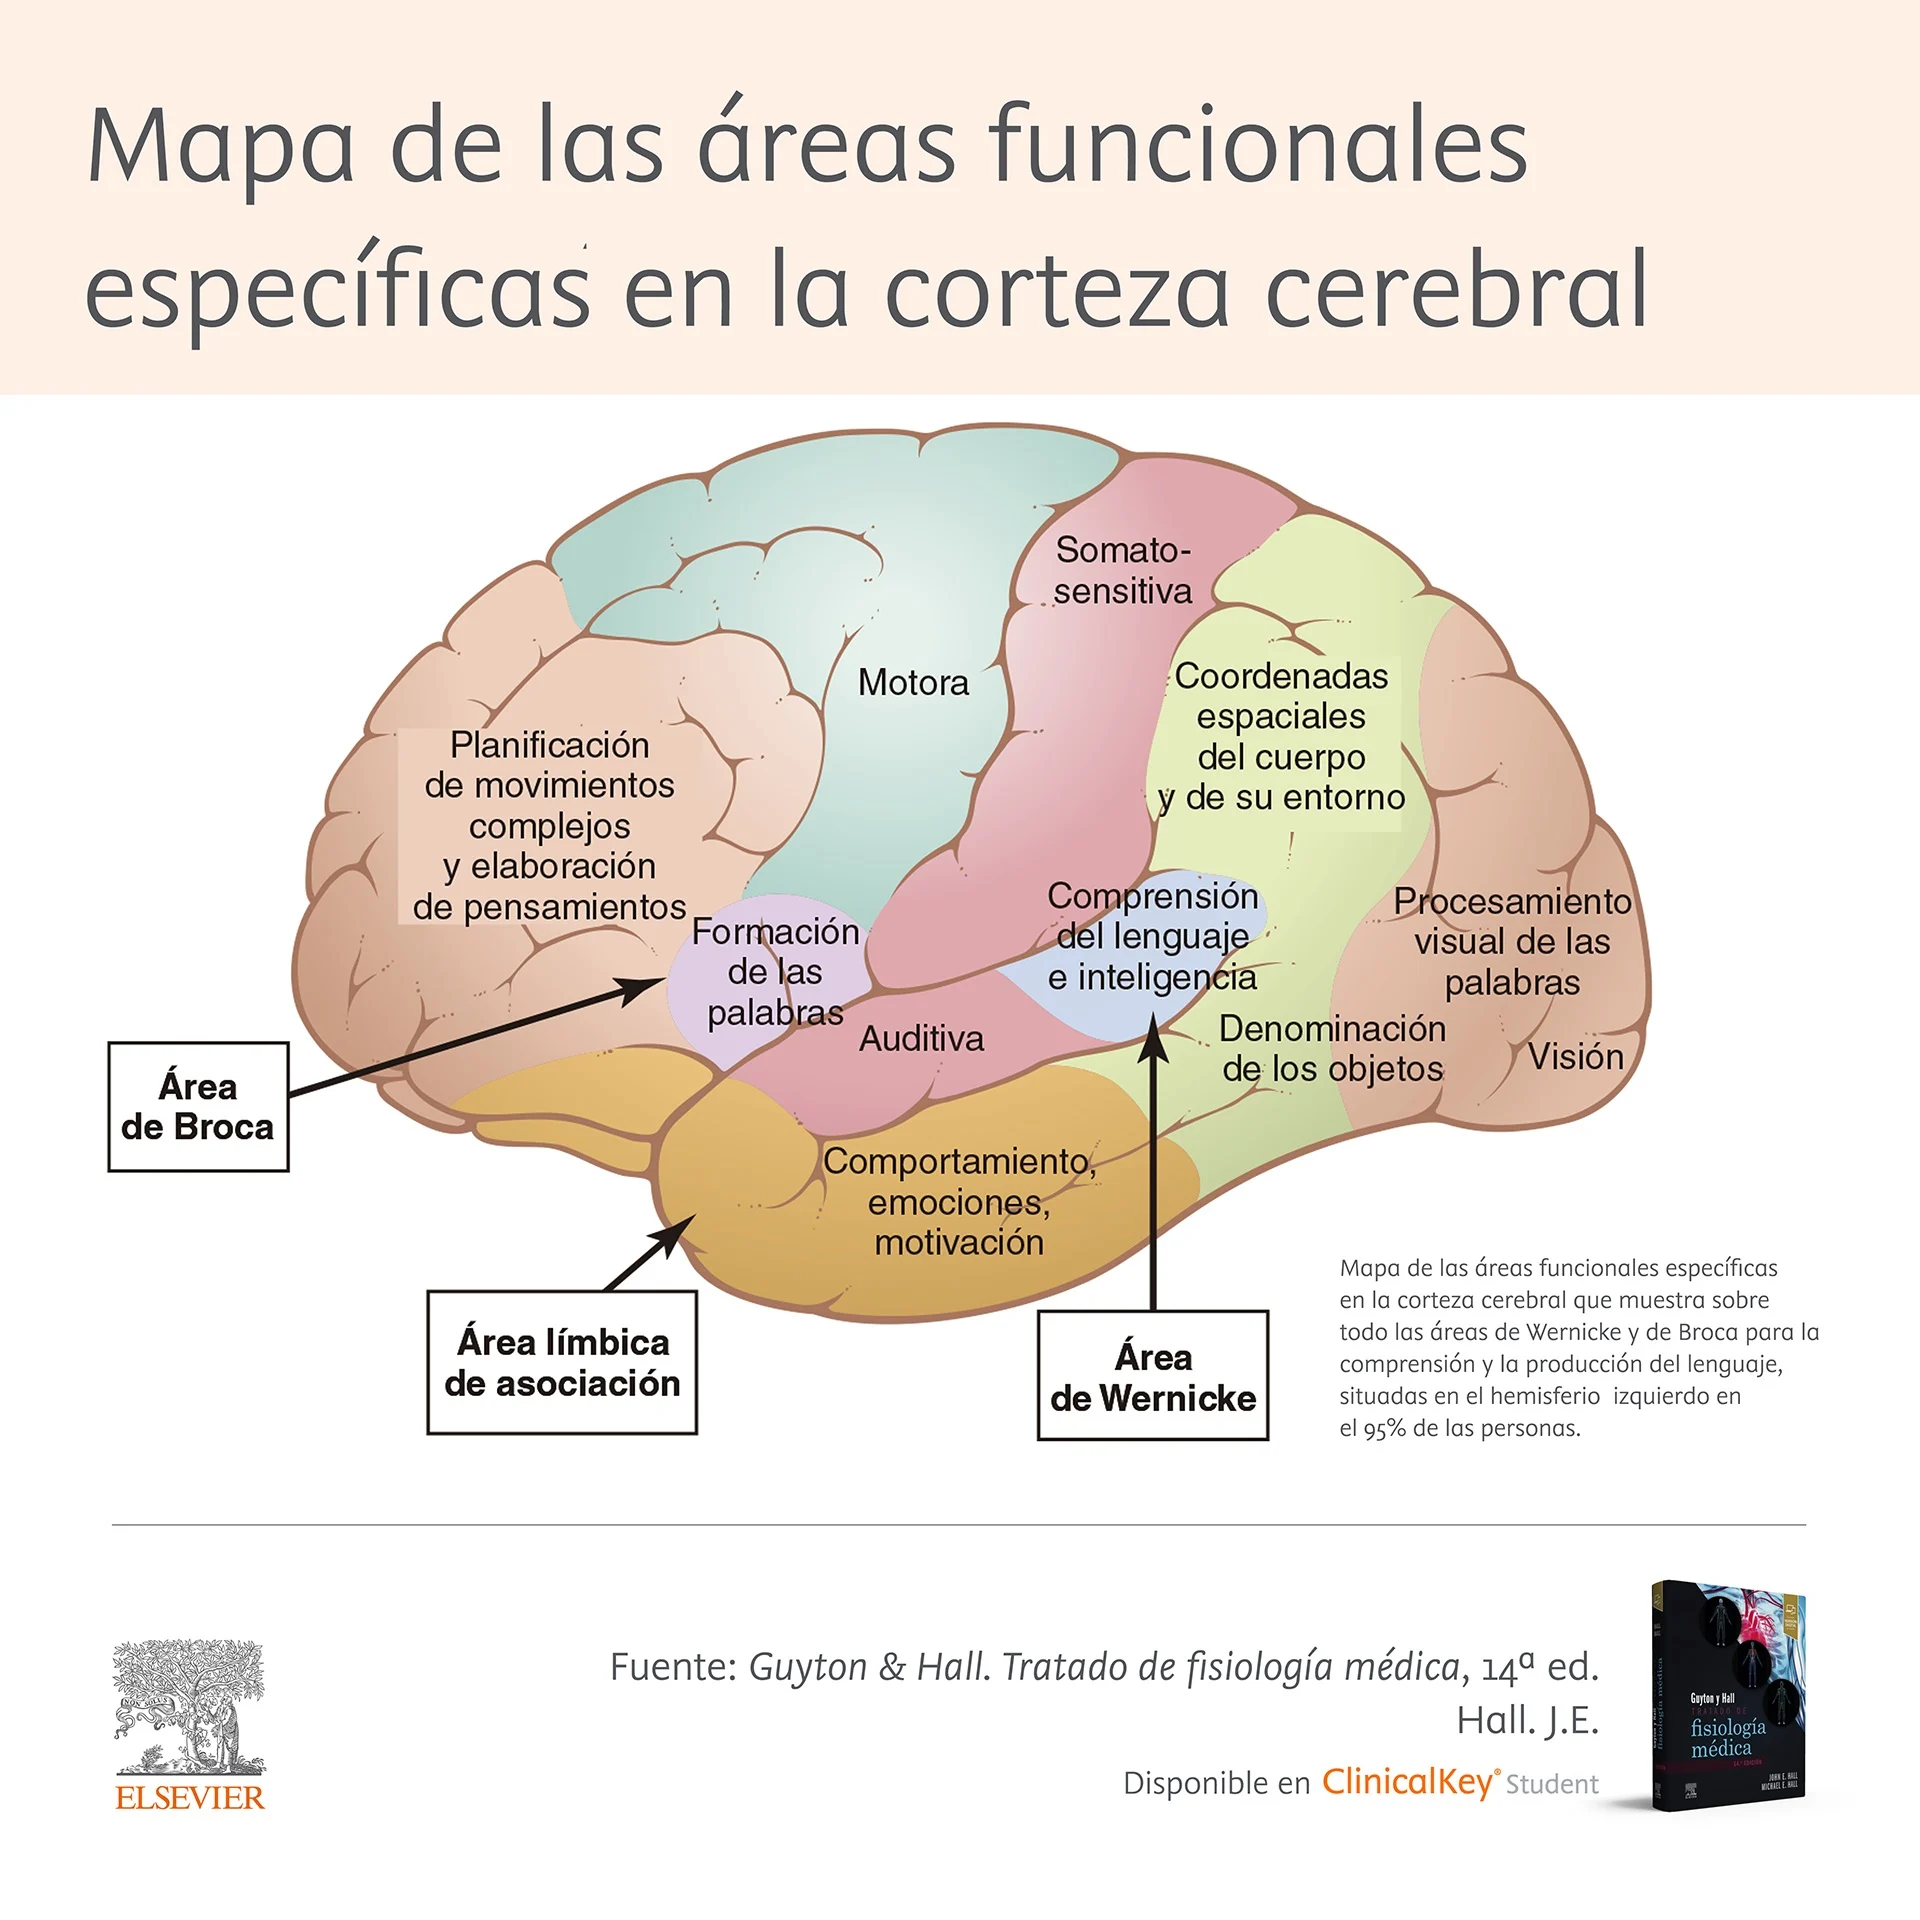 Mapa de las areas funcionales especificas en la corteza cerebral